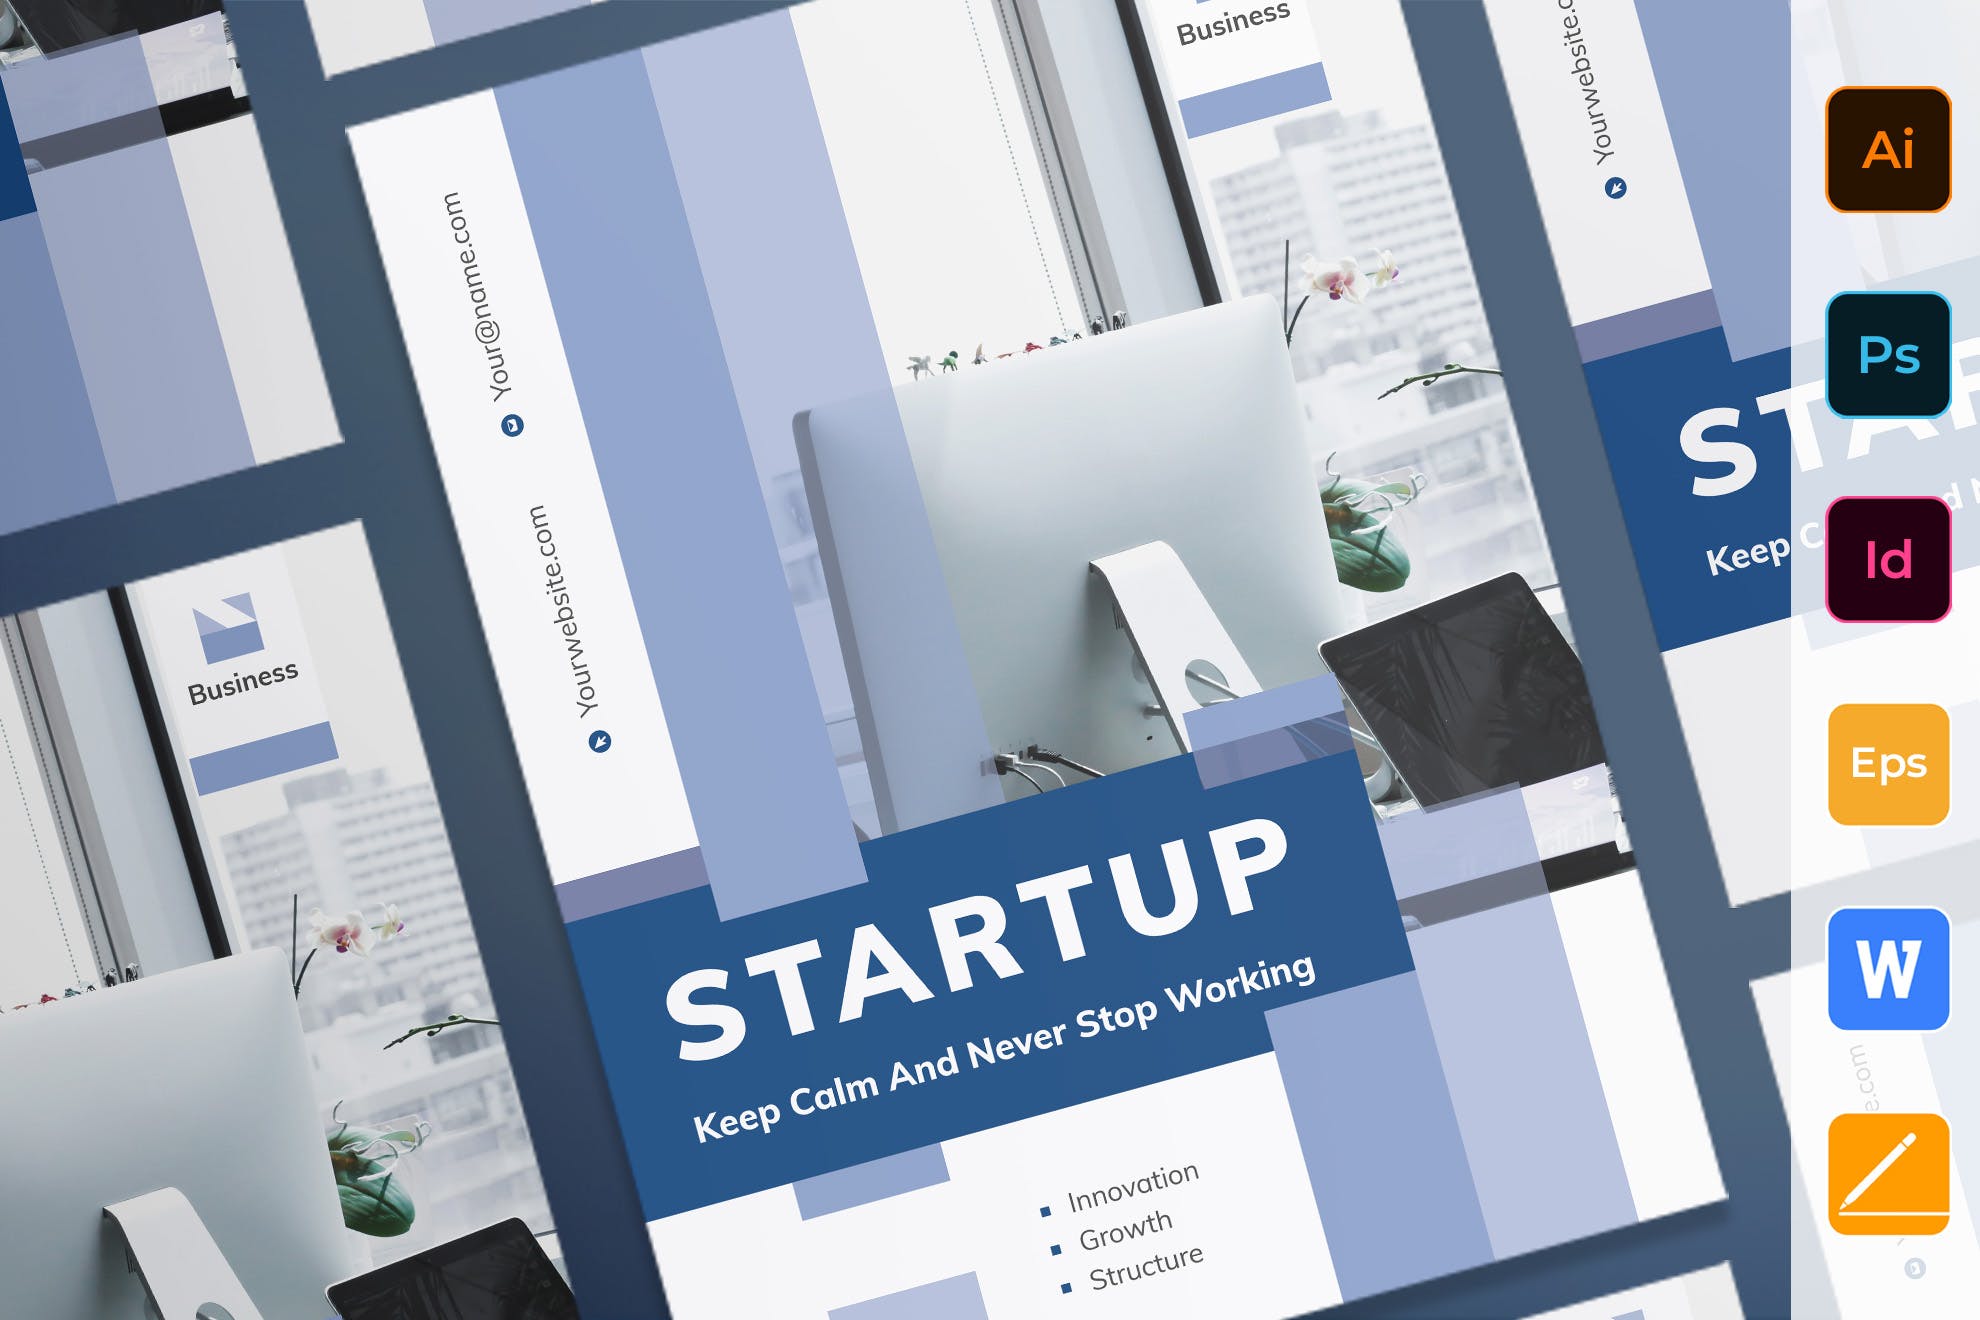 创业互联网项目简介宣传海报PSD素材第一素材精选模板 Startup Poster插图